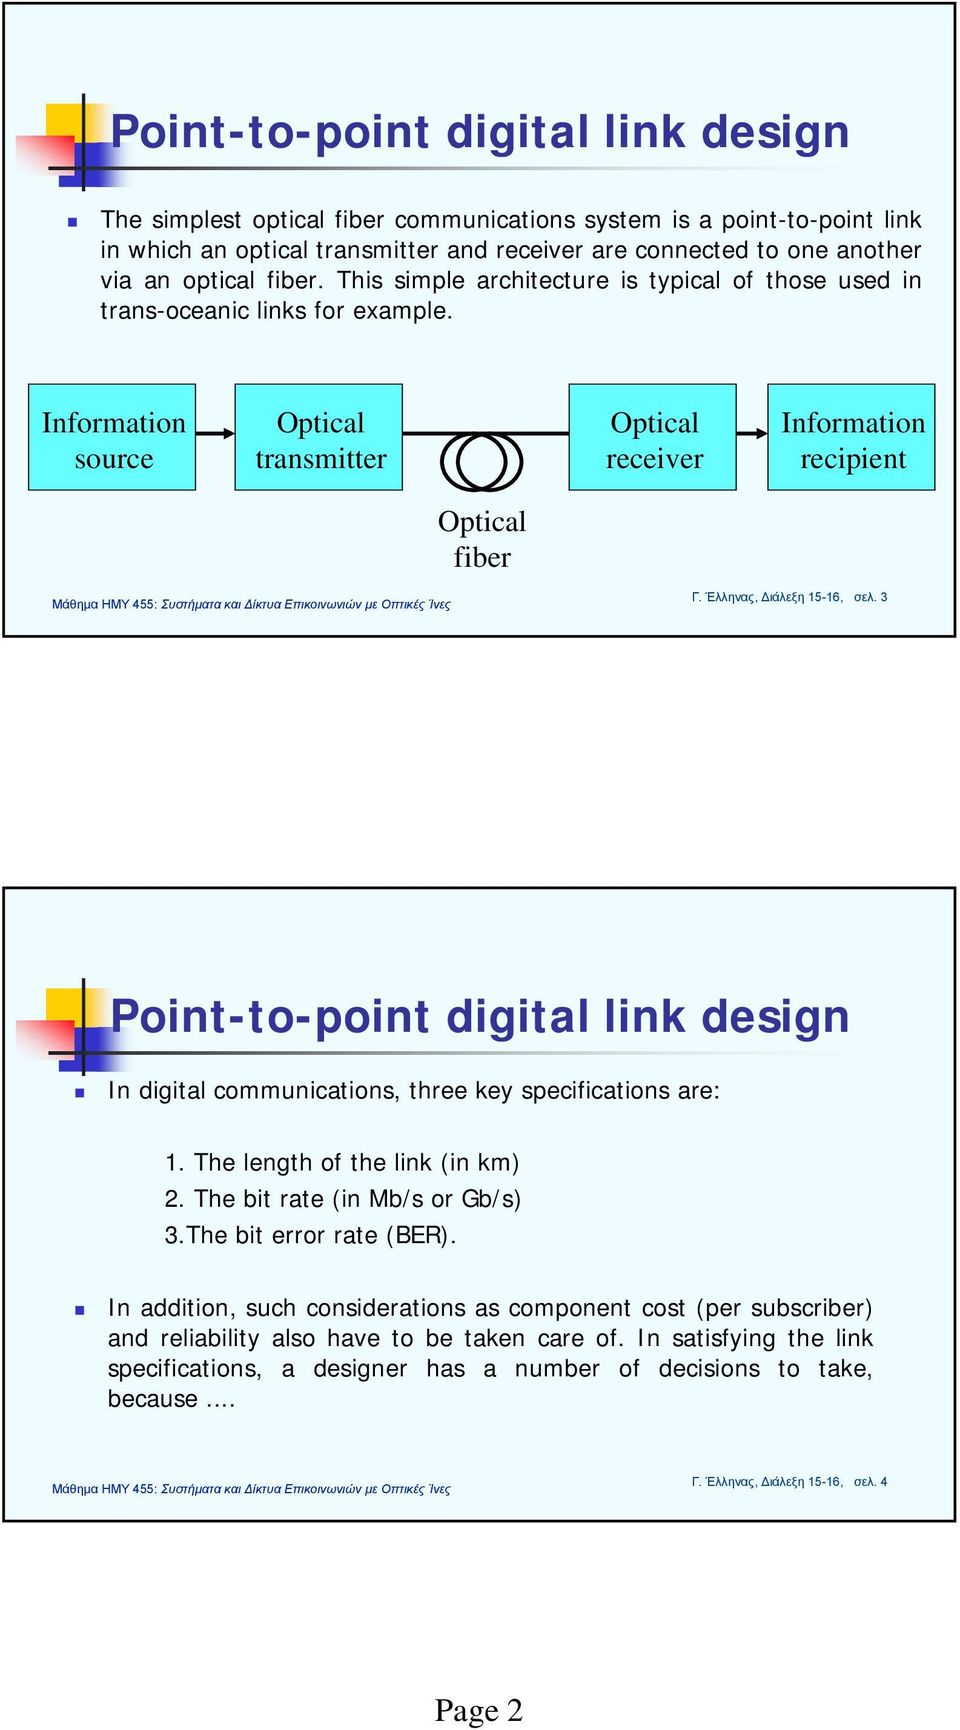 Έλληνας, Διάλεξη 15-16, σελ. 3 Point-to-point digital link design In digital communications, three key specifications are: 1. The length of the link (in km) 2. The bit rate (in Mb/s or Gb/s) 3.